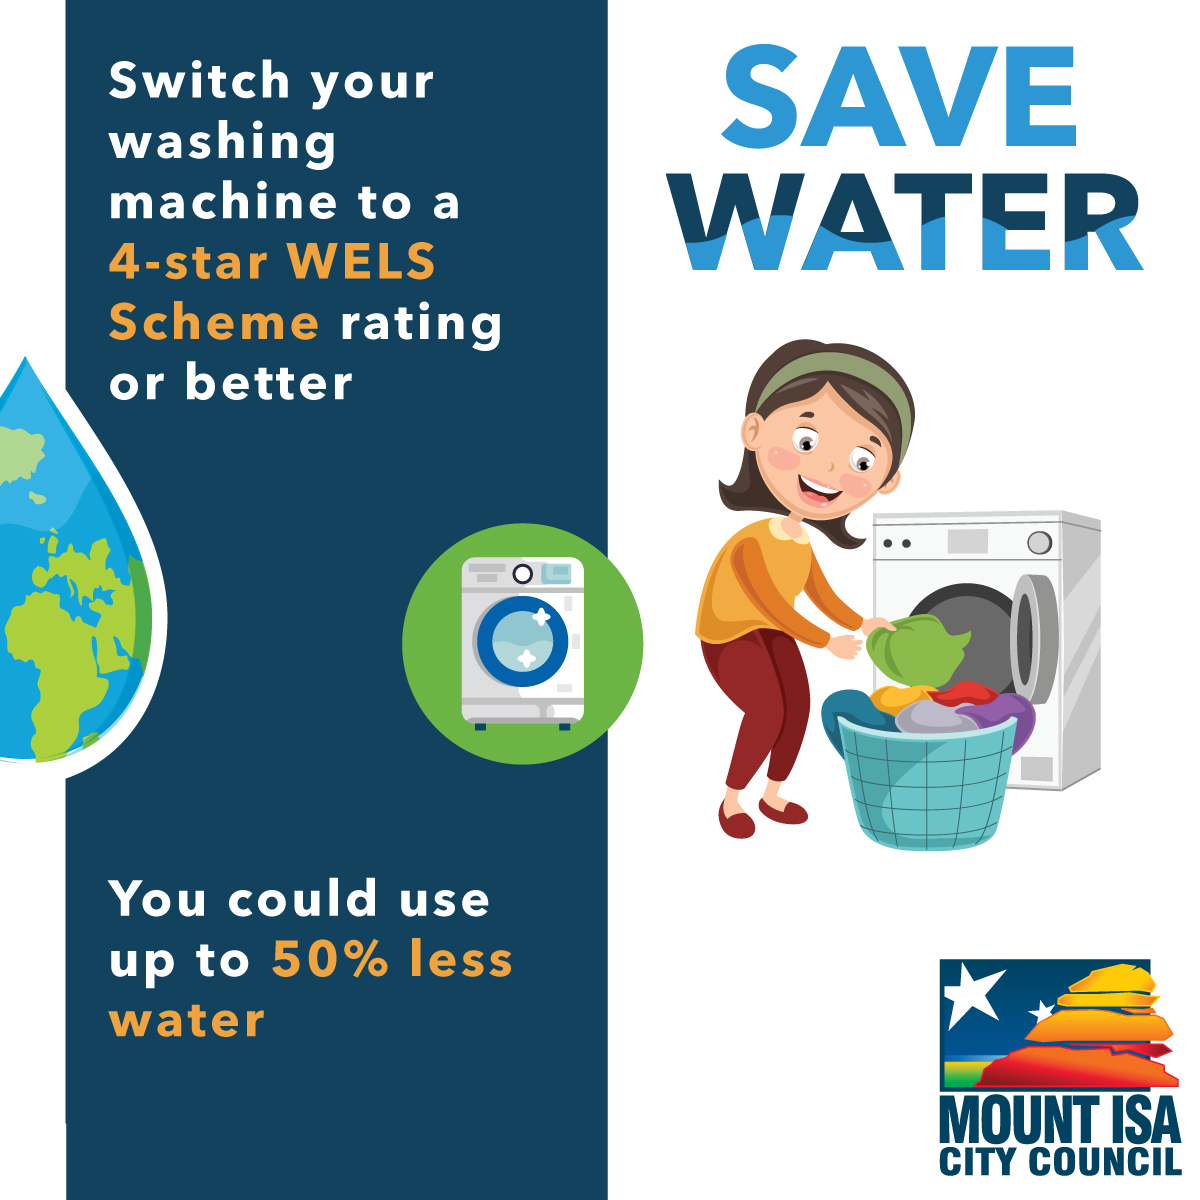 Water conservation - washing machine